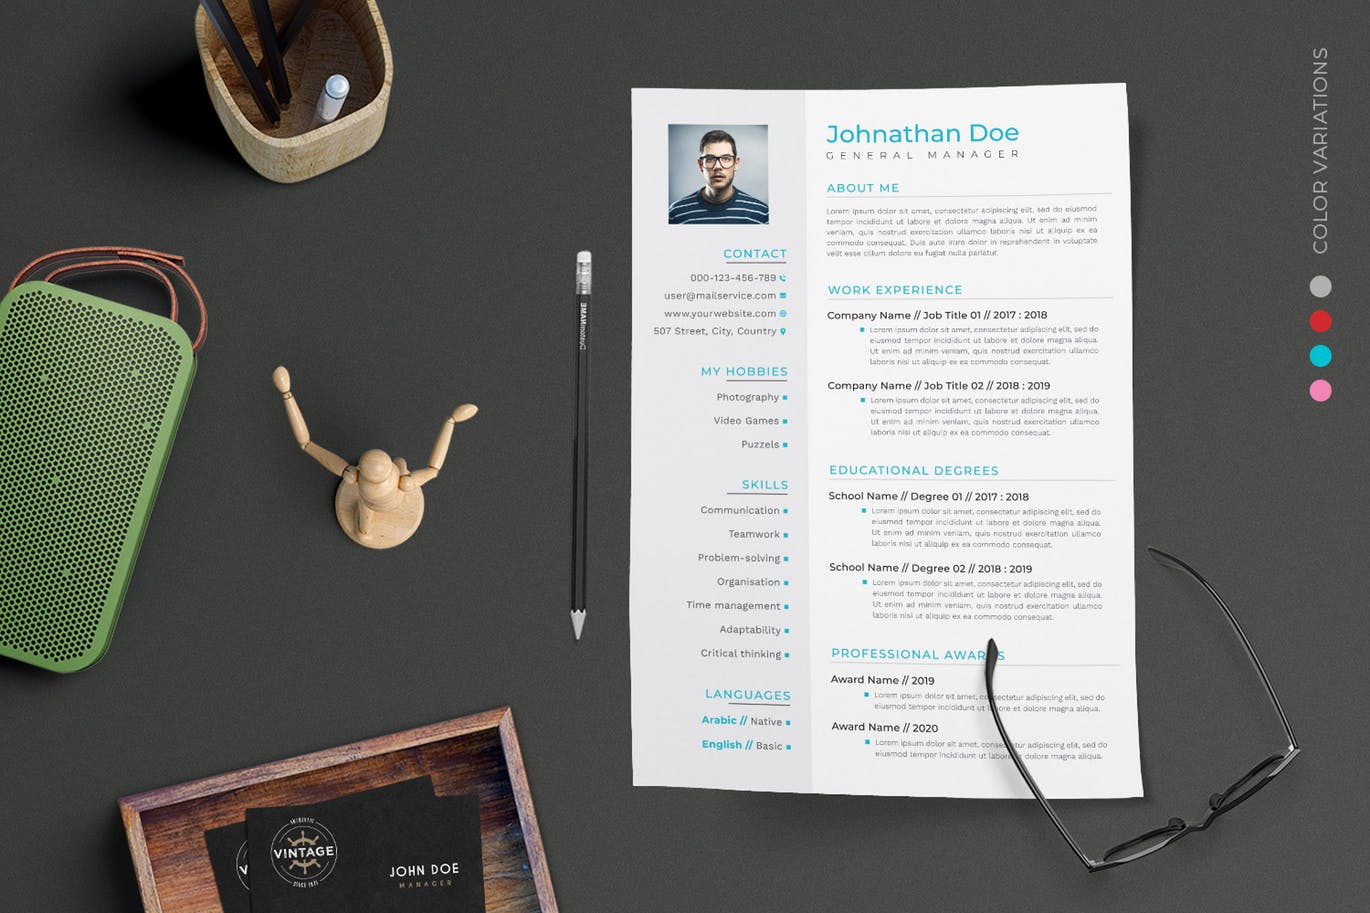 项目管理经理个人电子非凡图库精选简历模板 CV Resume插图